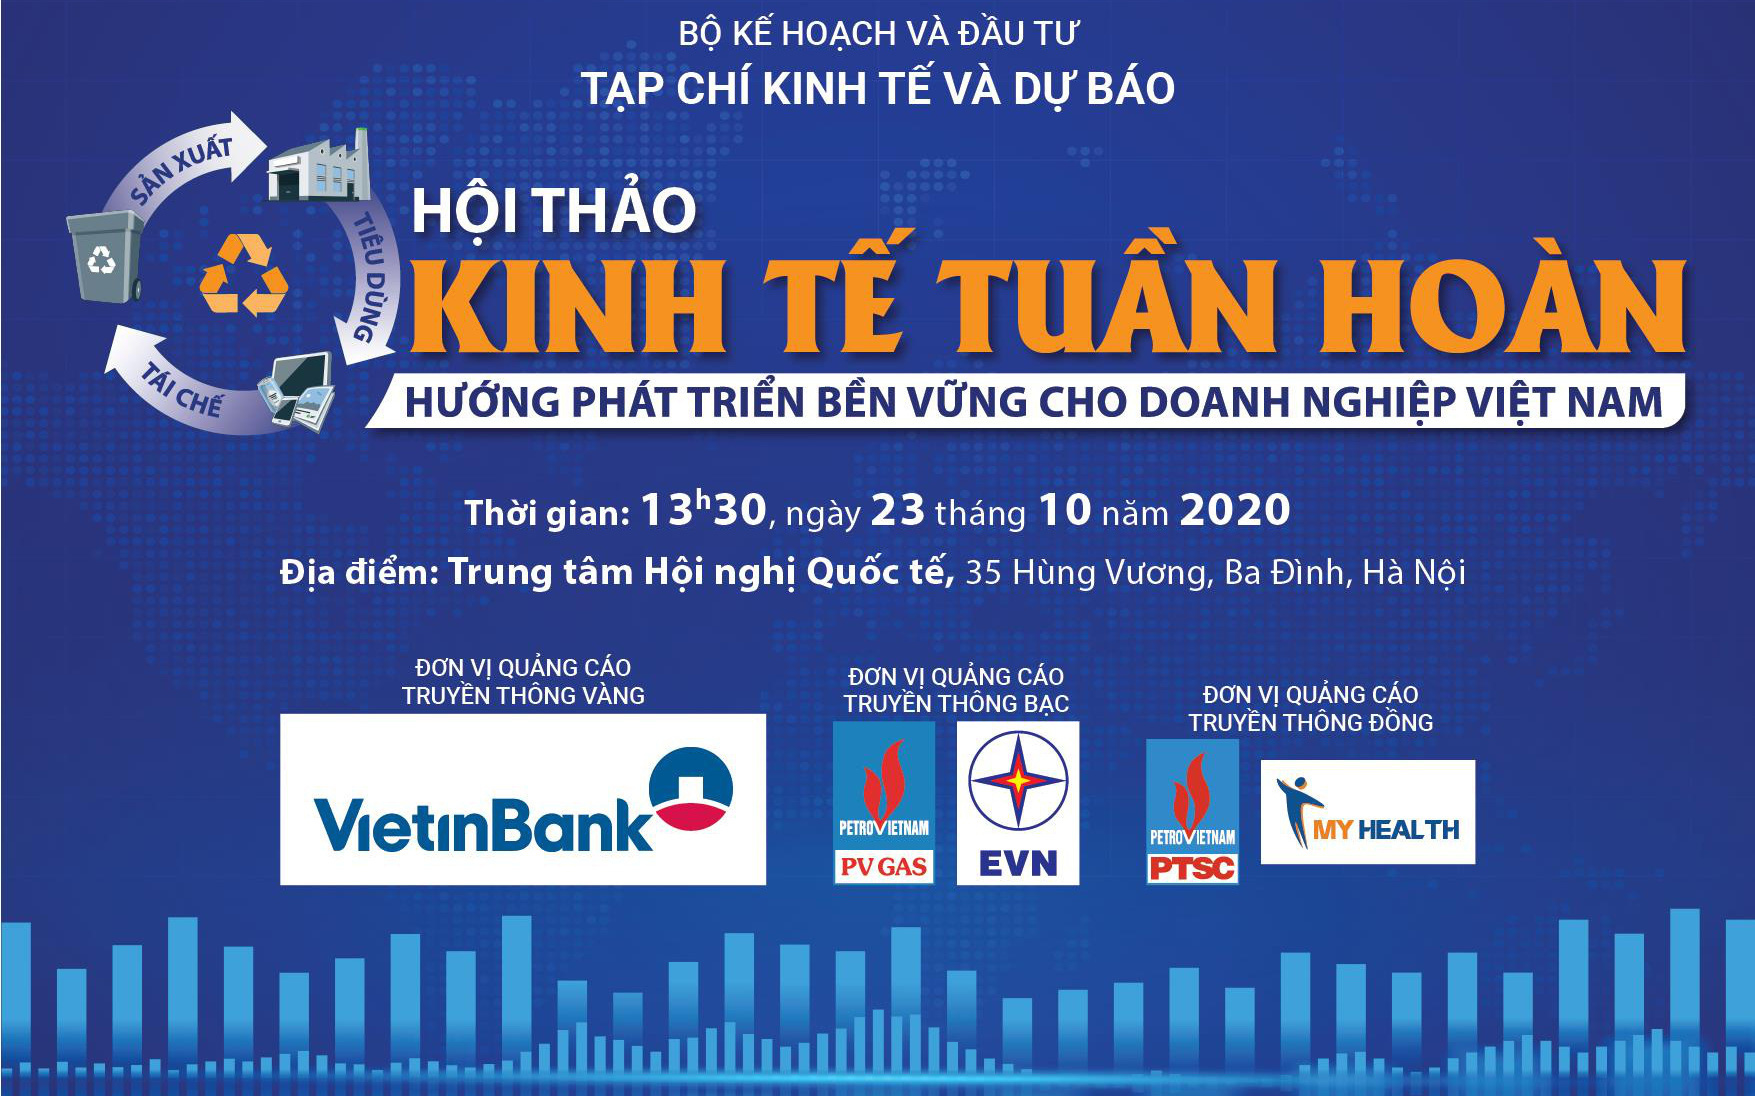 Hội thảo Kinh tế tuần hoàn: Hướng phát triển bền vững cho doanh nghiệp Việt Nam